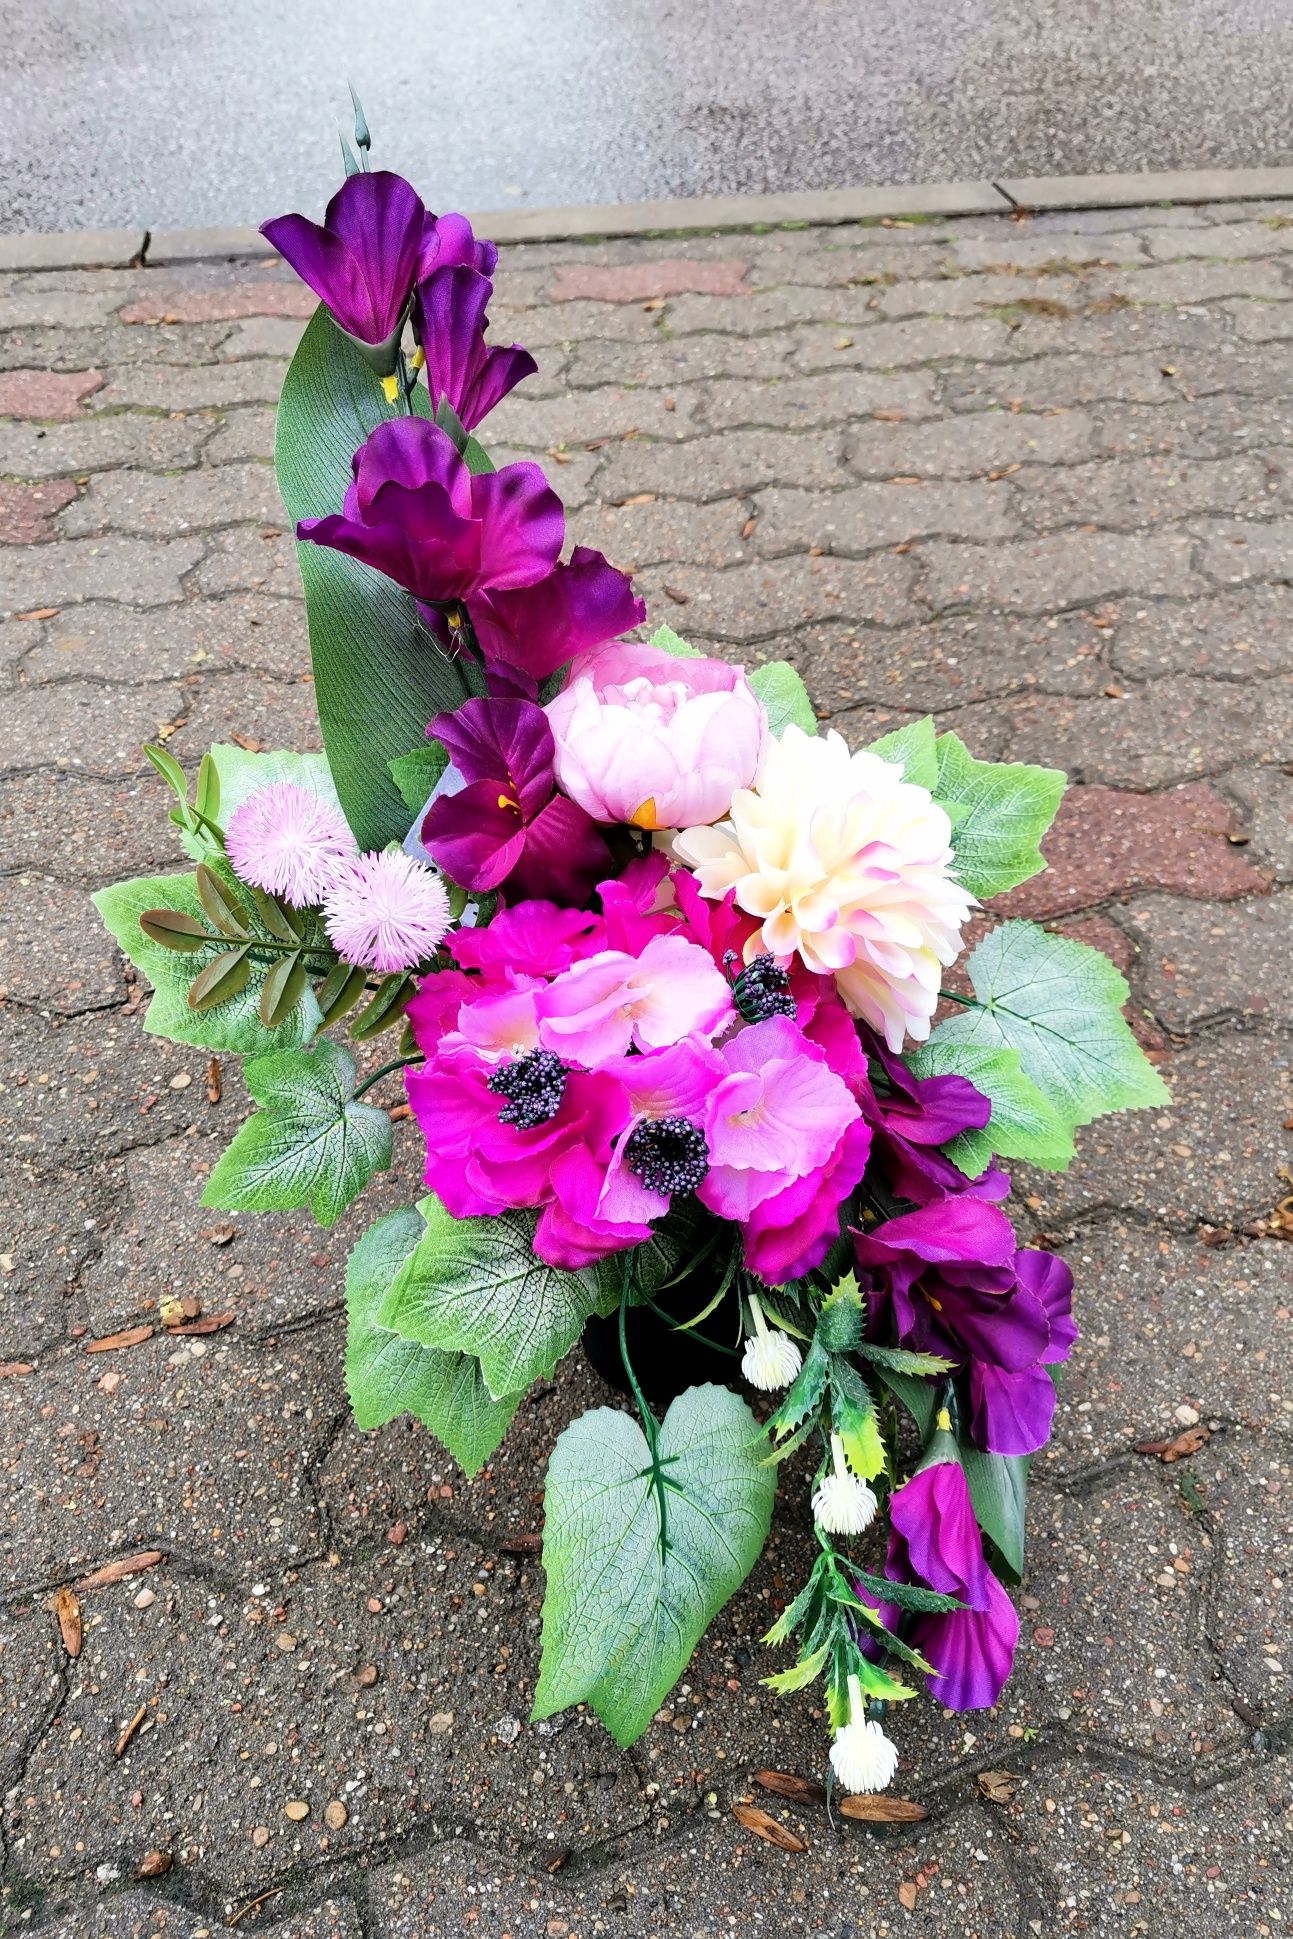 Komplet sztuczne kwiaty wiązanka wazon fiolet amarant zestaw bukiet